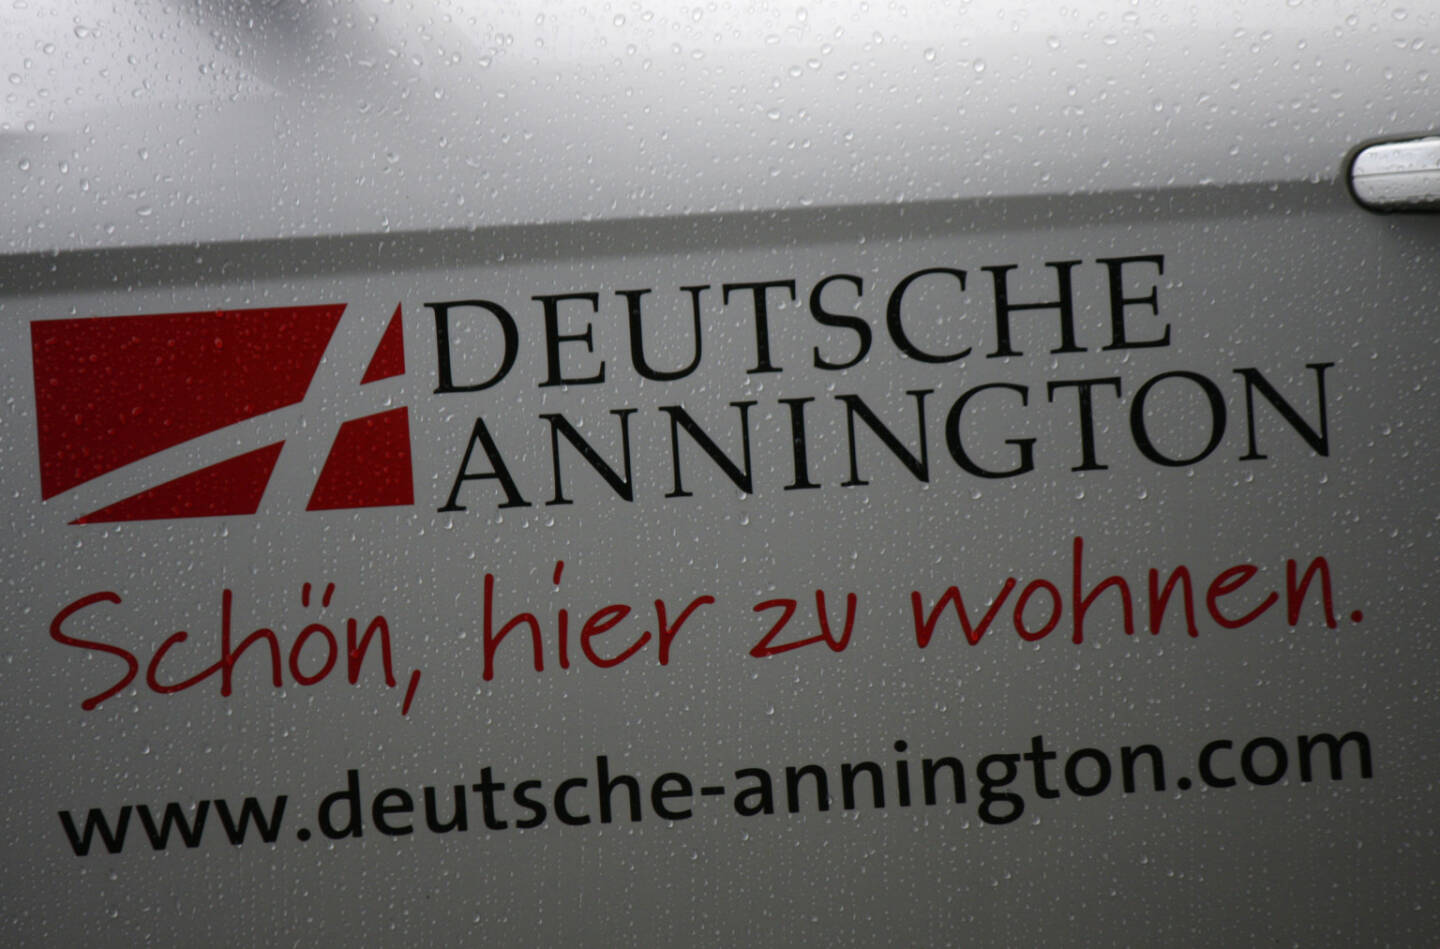 Deutsche Annington - Schön hier zu wohnen <a href=http://www.shutterstock.com/gallery-320989p1.html?cr=00&pl=edit-00>360b</a> / <a href=http://www.shutterstock.com/editorial?cr=00&pl=edit-00>Shutterstock.com</a>